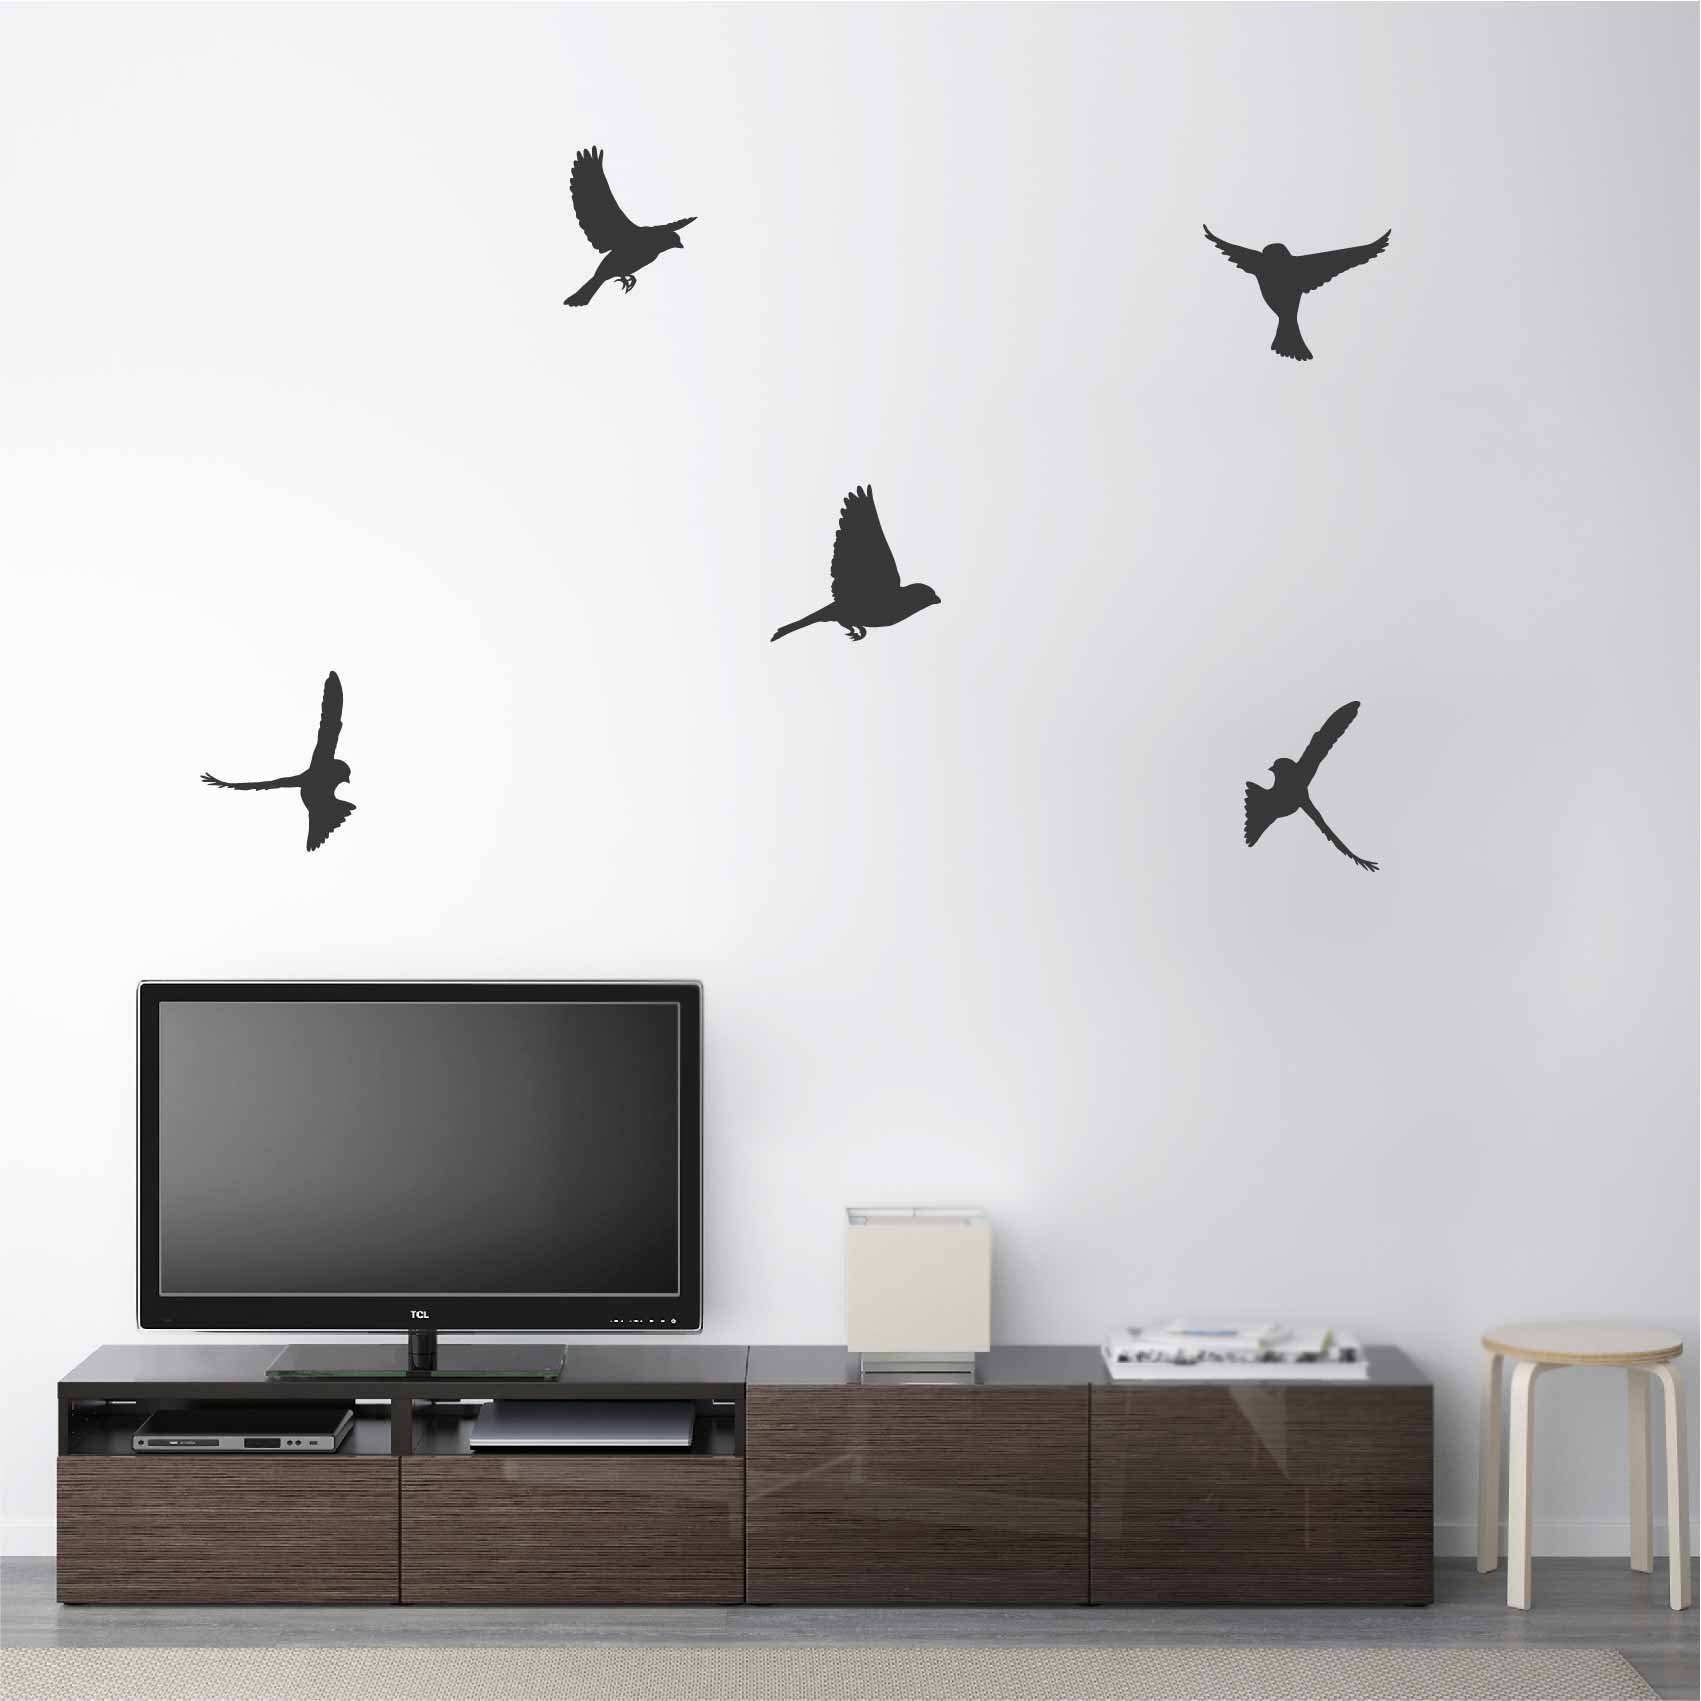 stickers-vol-d-oiseaux-ref11oiseaux-stickers-muraux-oiseaux-autocollant-chambre-salon-deco-sticker-mural-oiseau-animaux